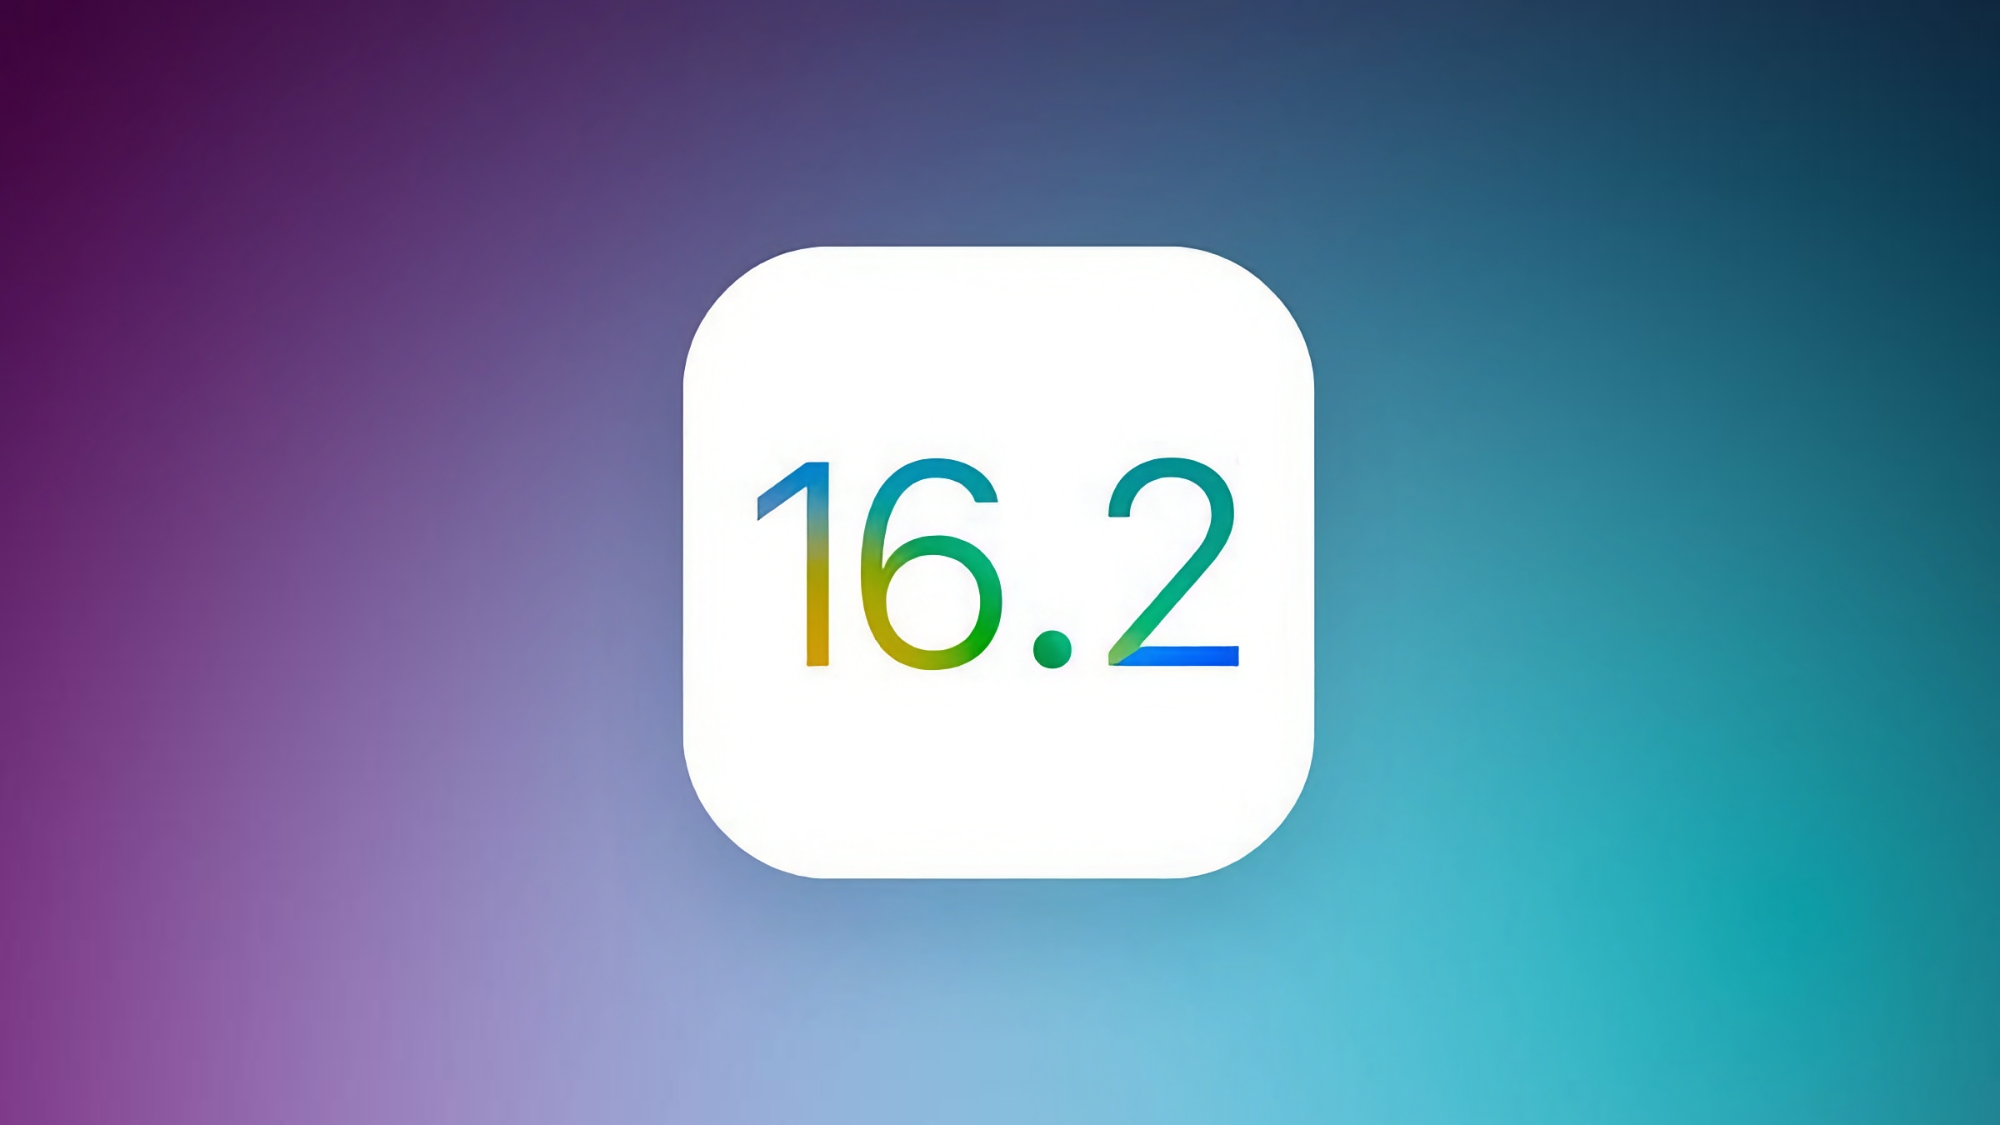 Apple veröffentlicht iOS 16.2 Beta 1: Was ist neu?